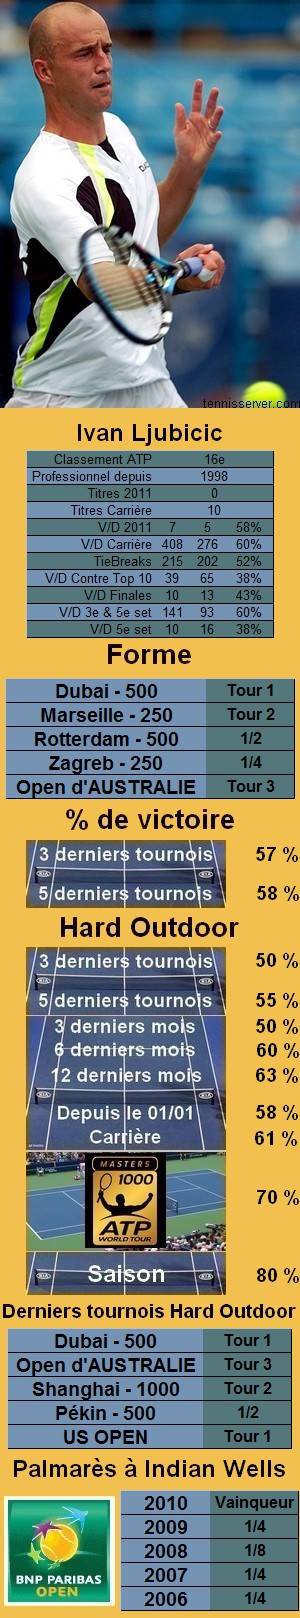 Les statistiques tennis de Ivan Ljubicic pour le tournoi de Indian Wells